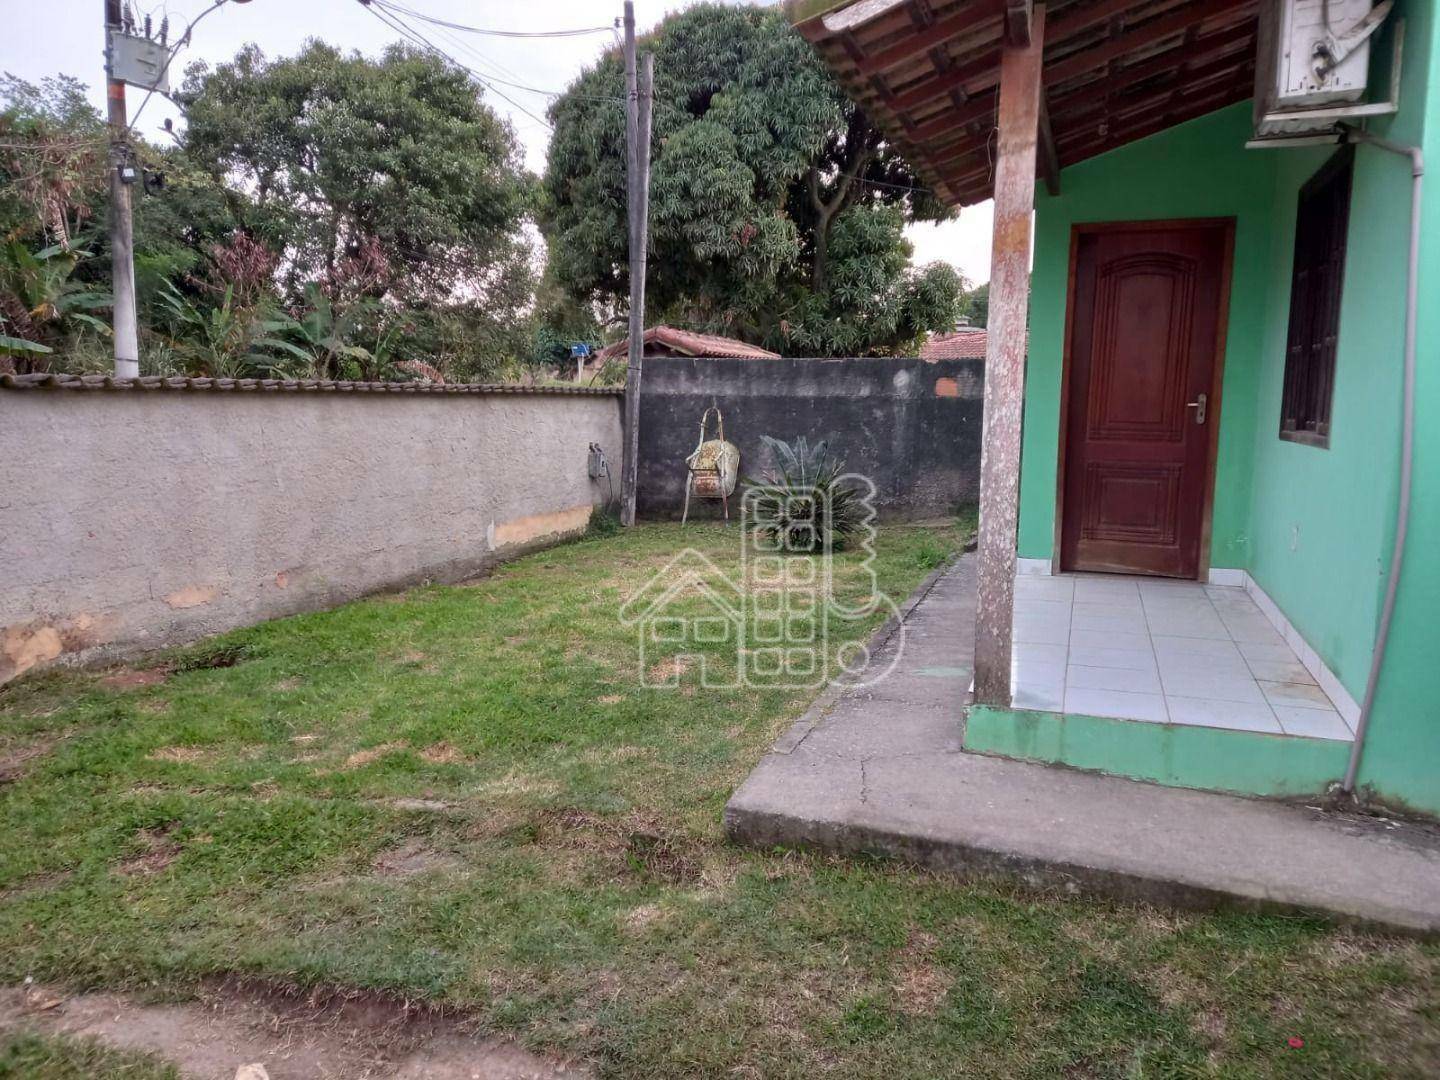 Casa à venda, 70 m² por R$ 230.000,99 - Bosque Fundo - Maricá/RJ